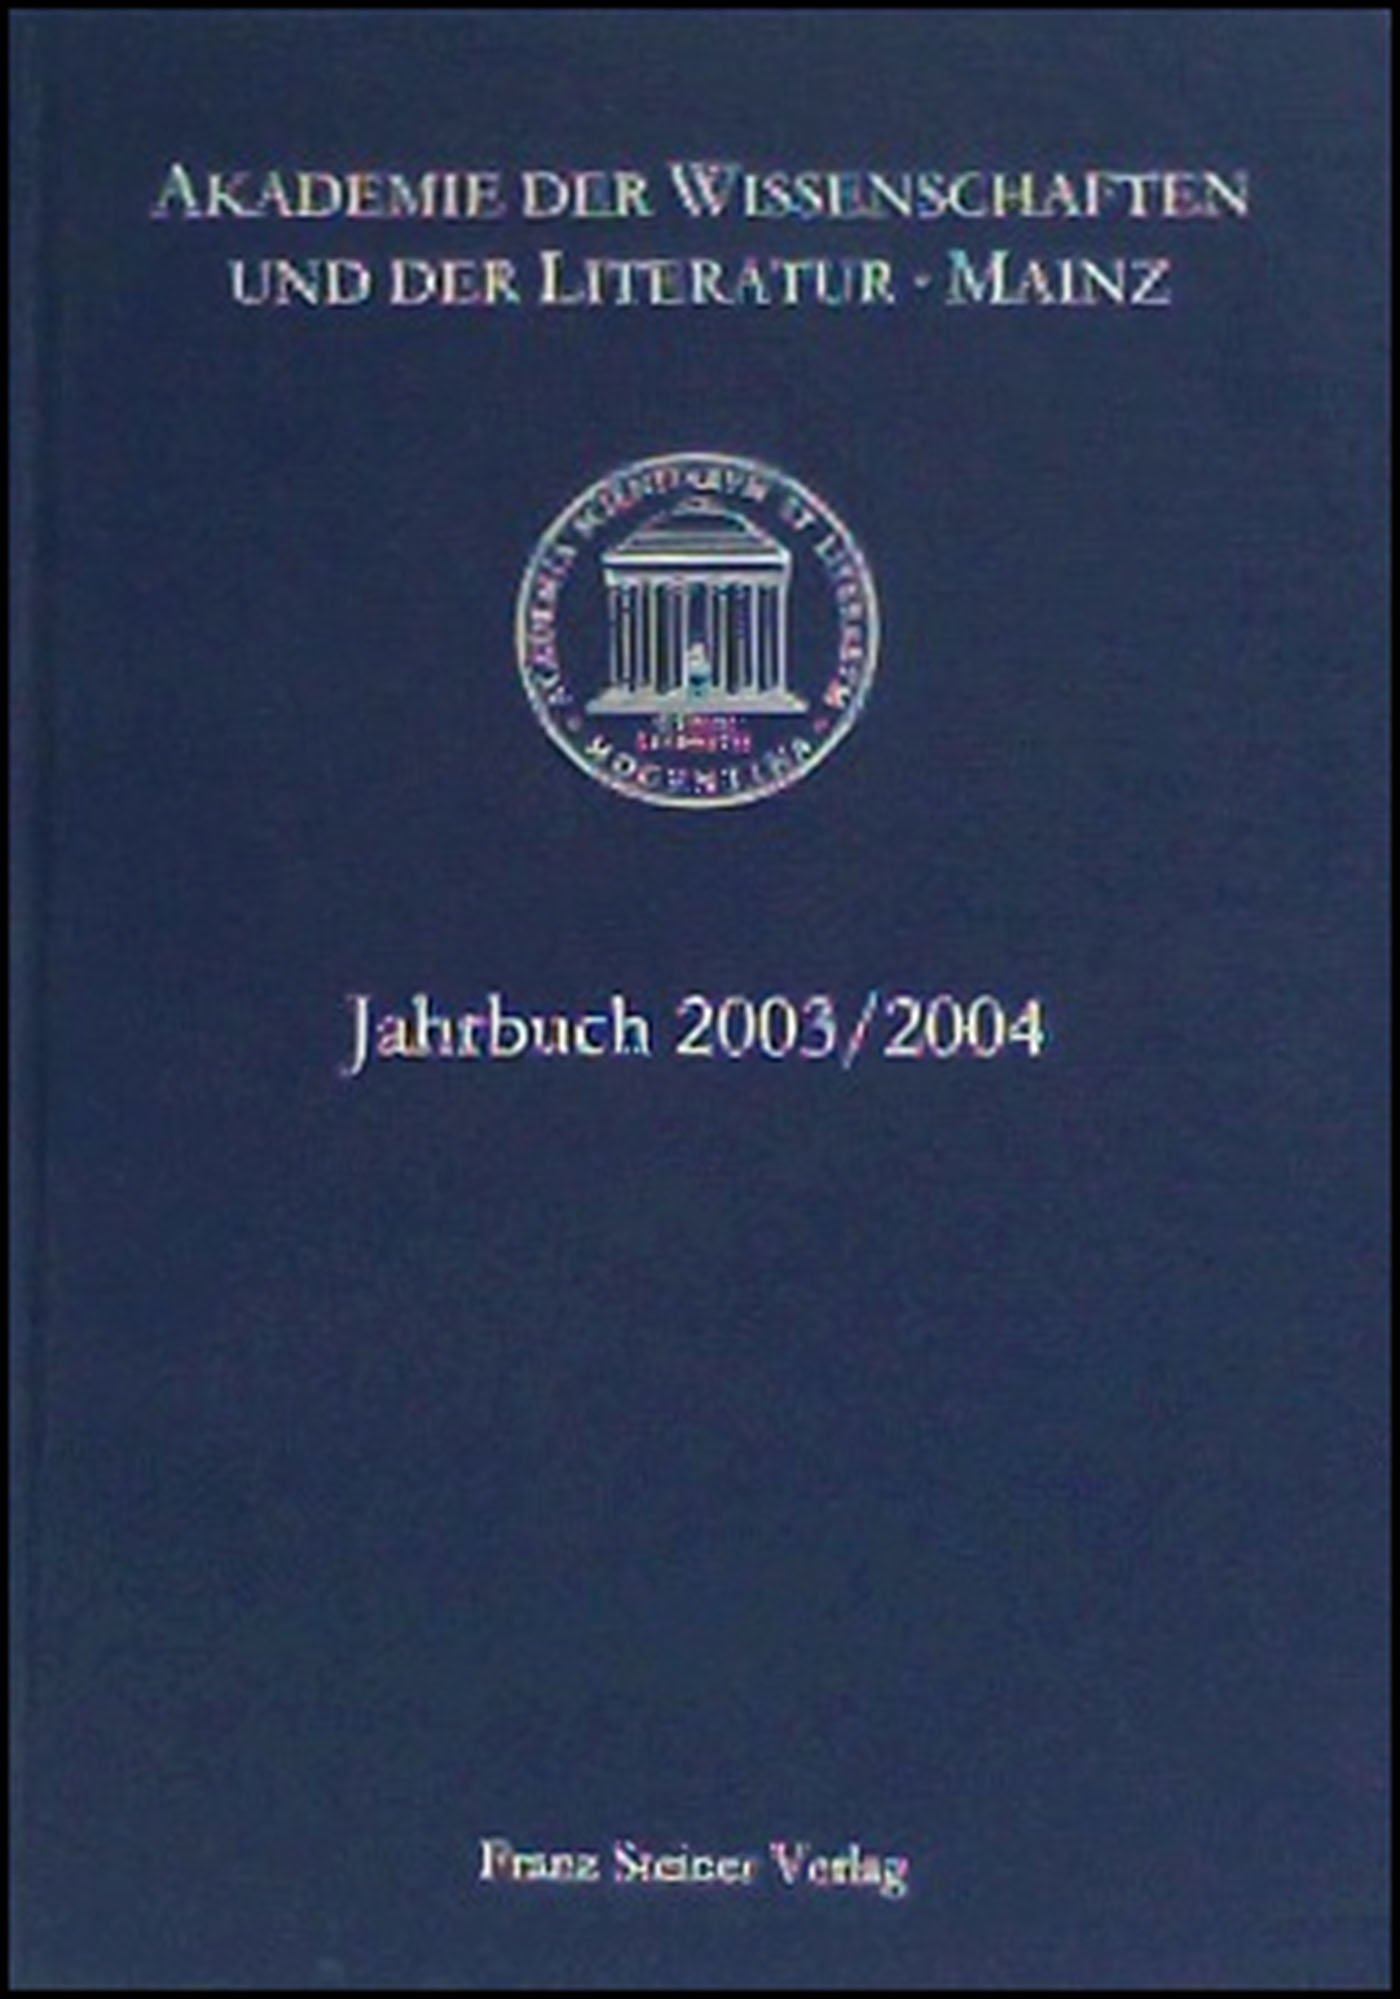 Akademie der Wissenschaften und der Literatur Mainz – Jahrbuch 54/55 (2003/2004)